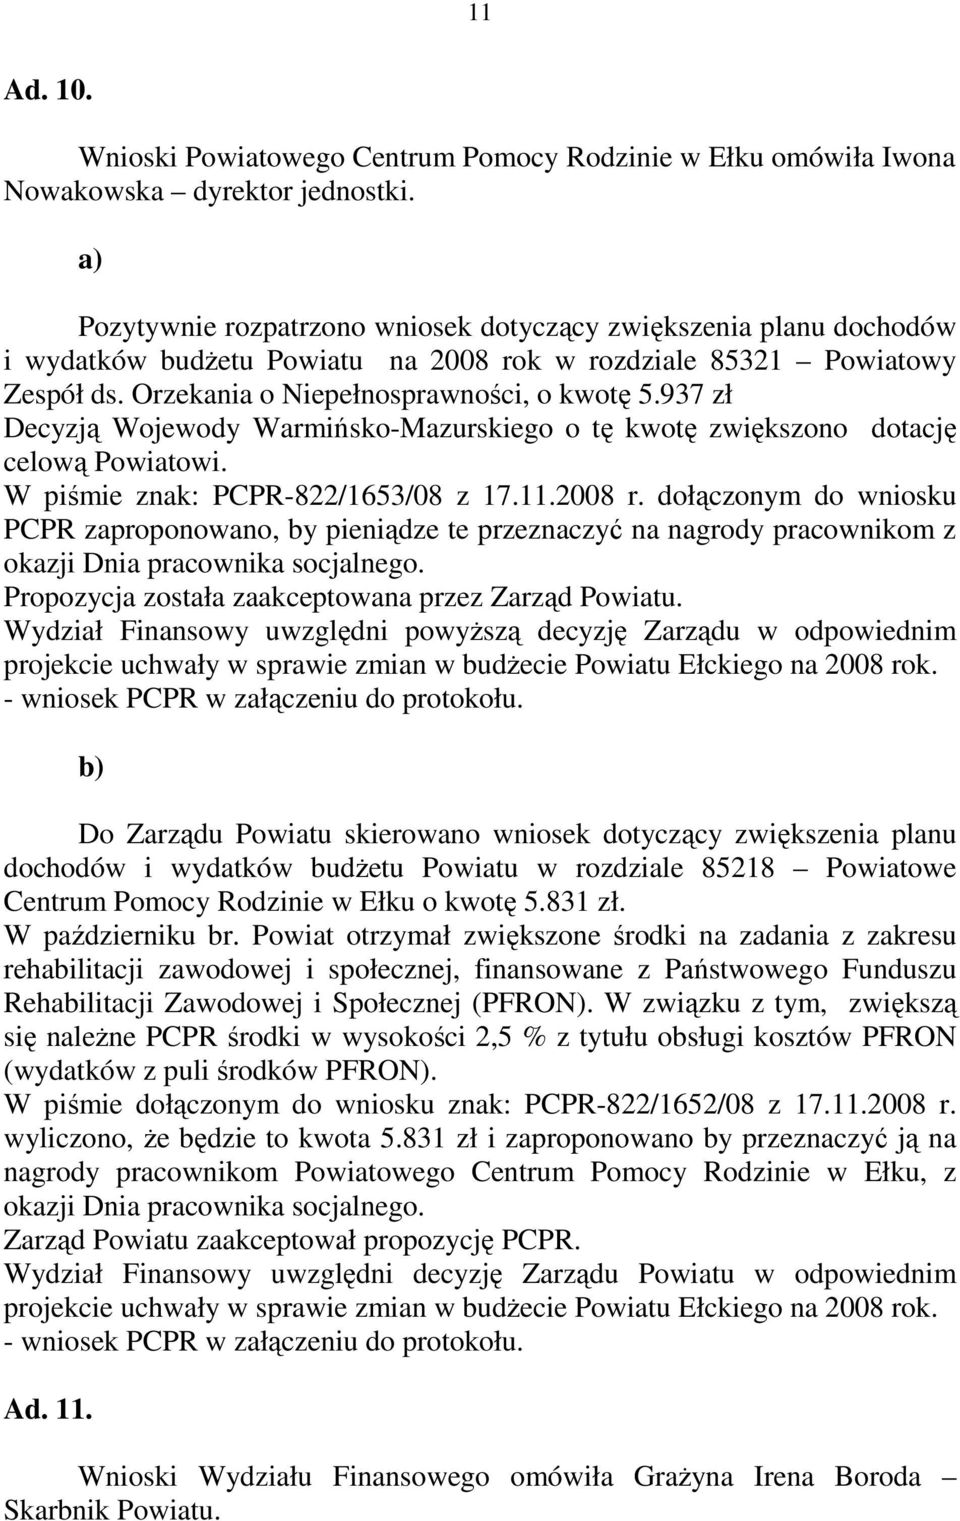 937 zł Decyzją Wojewody Warmińsko-Mazurskiego o tę kwotę zwiększono dotację celową Powiatowi. W piśmie znak: PCPR-822/1653/08 z 17.11.2008 r.